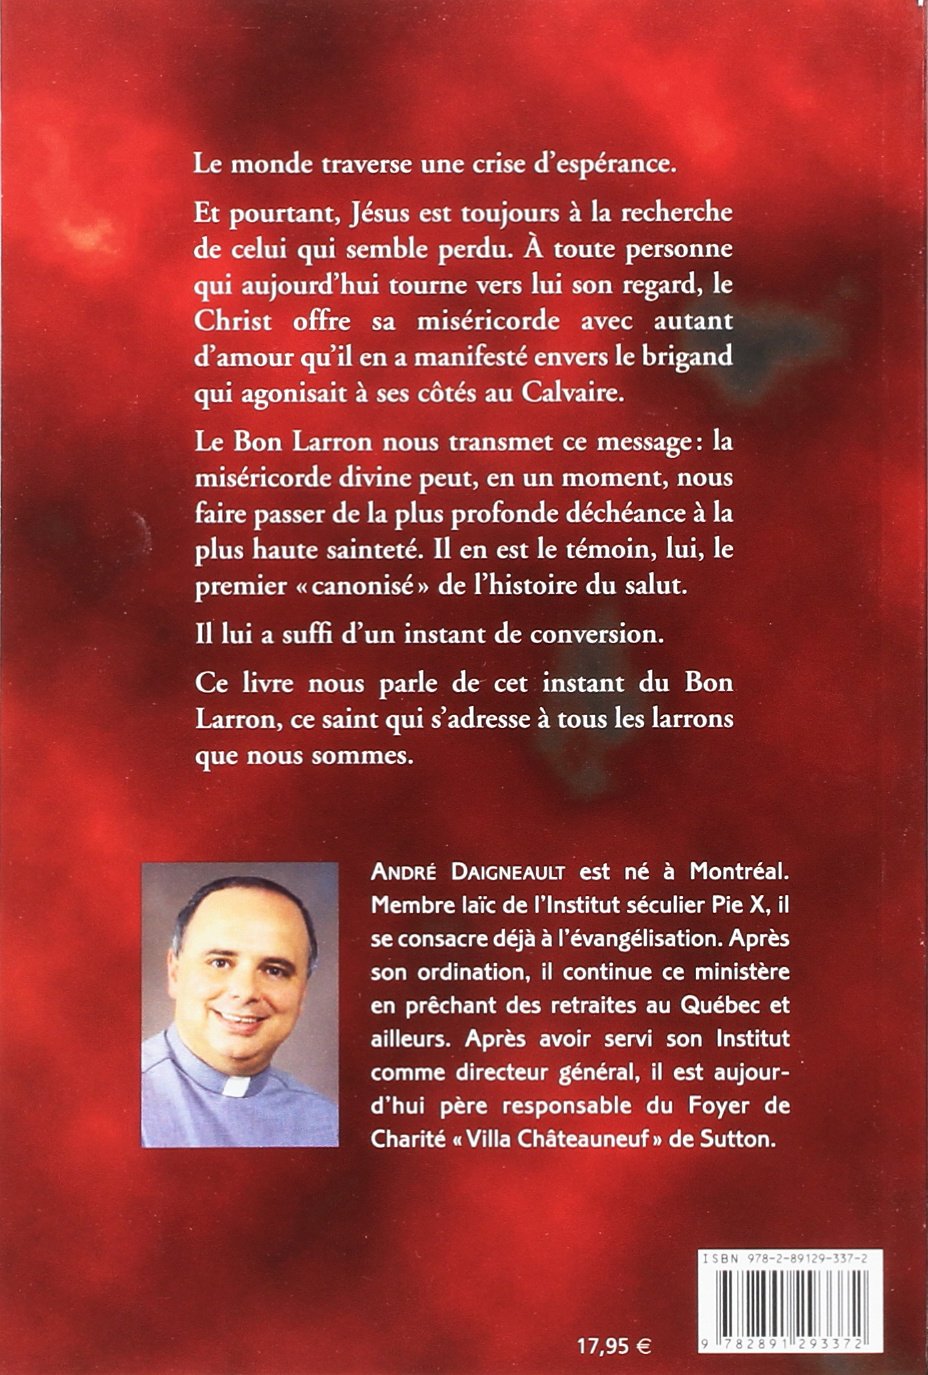 Le bon larron (André Daigneault)